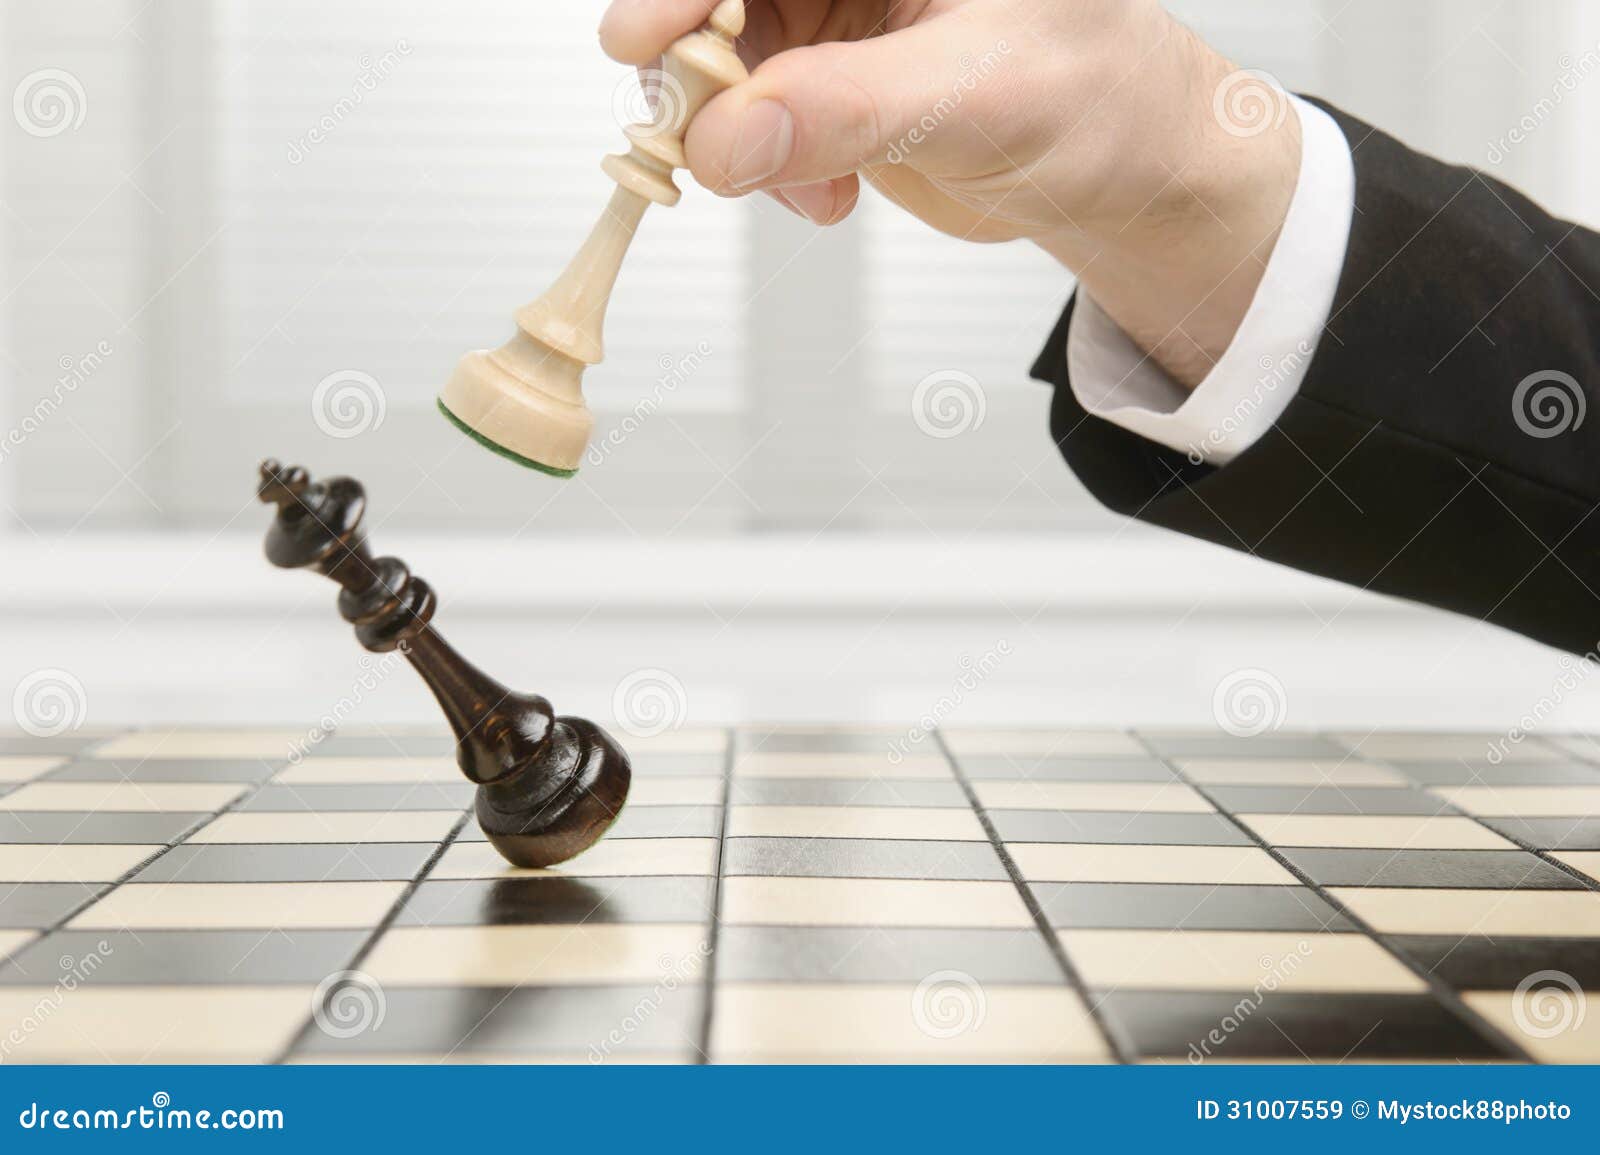 king checkmate